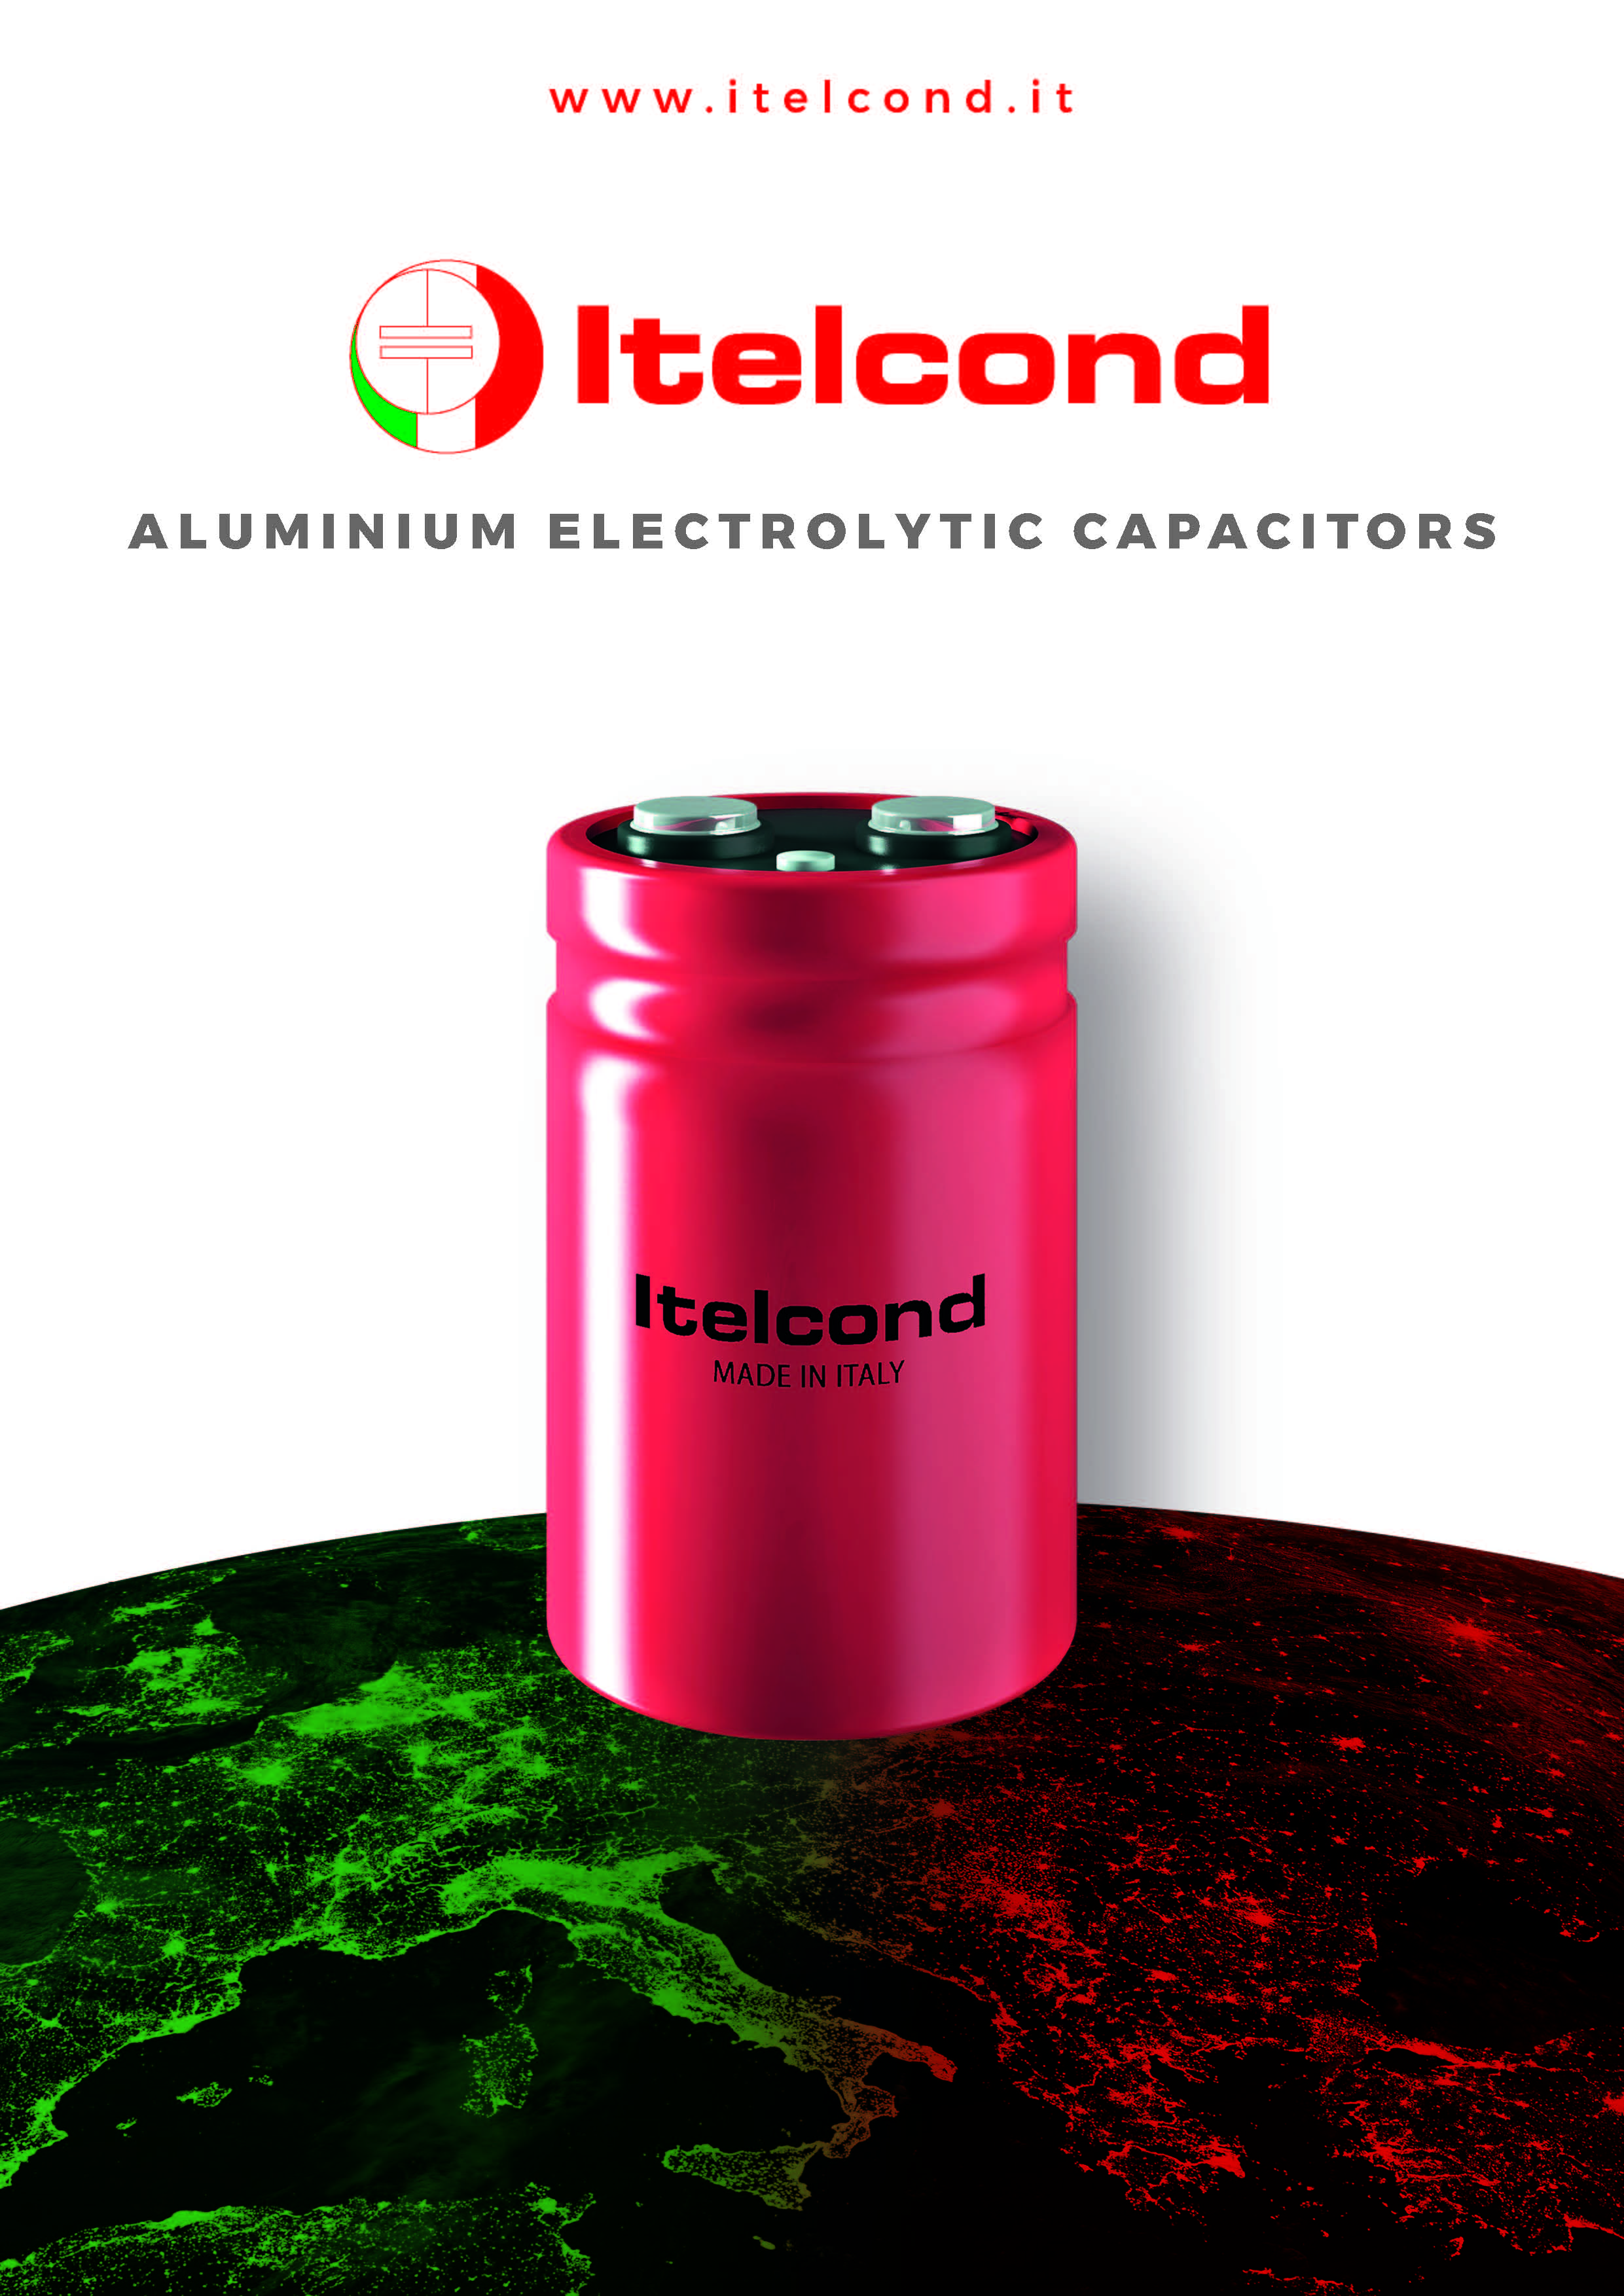 Itelcond - Электролитические конденсаторы